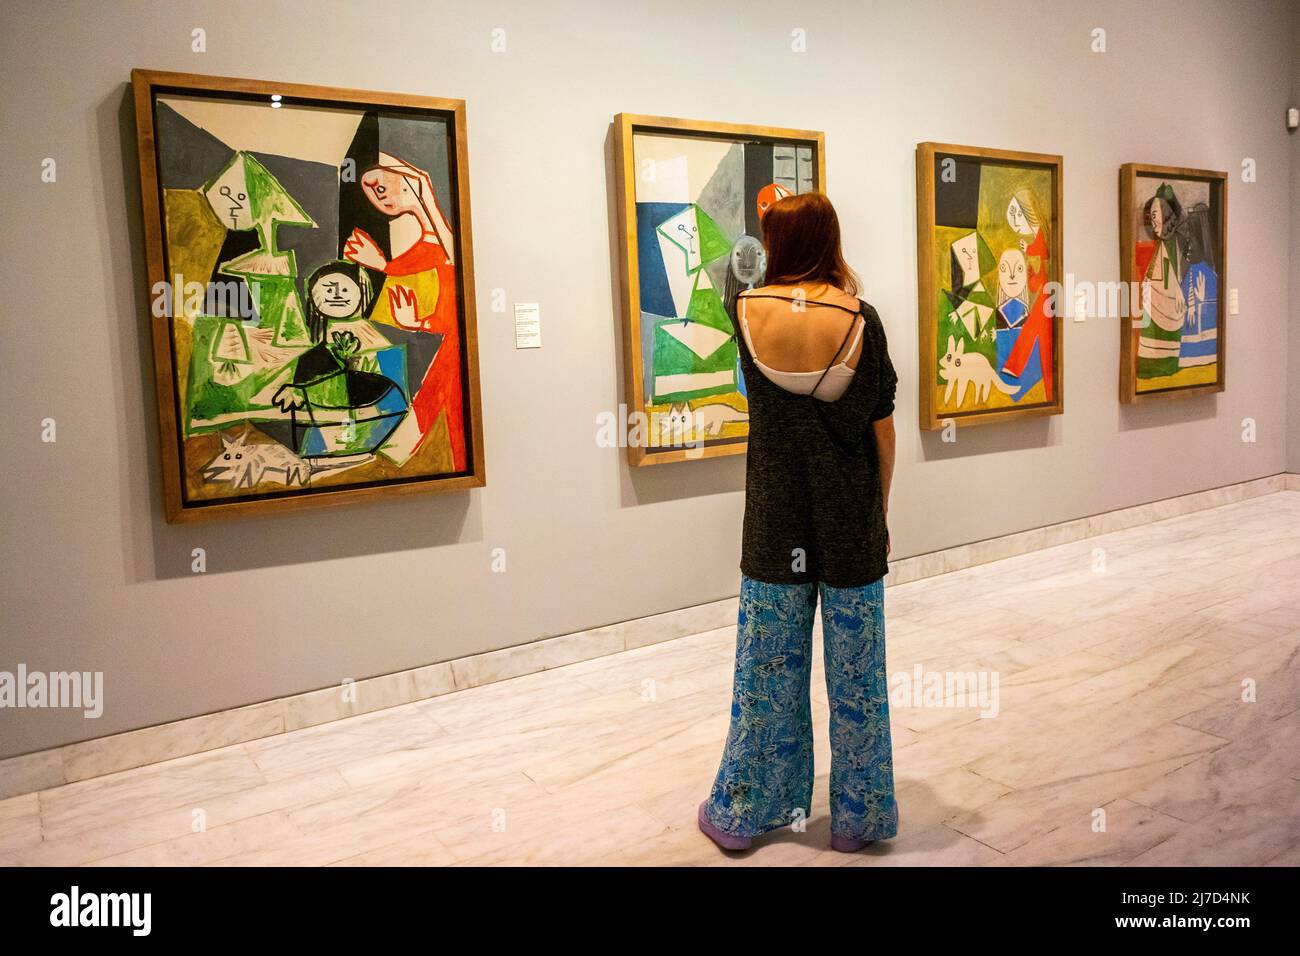 Barcelone, Espagne, Musée Pablo Picasso, Femme debout de derrière, intérieur, Galerie d'art regardant des peintures abstraites modernes de pablo picasso Banque D'Images